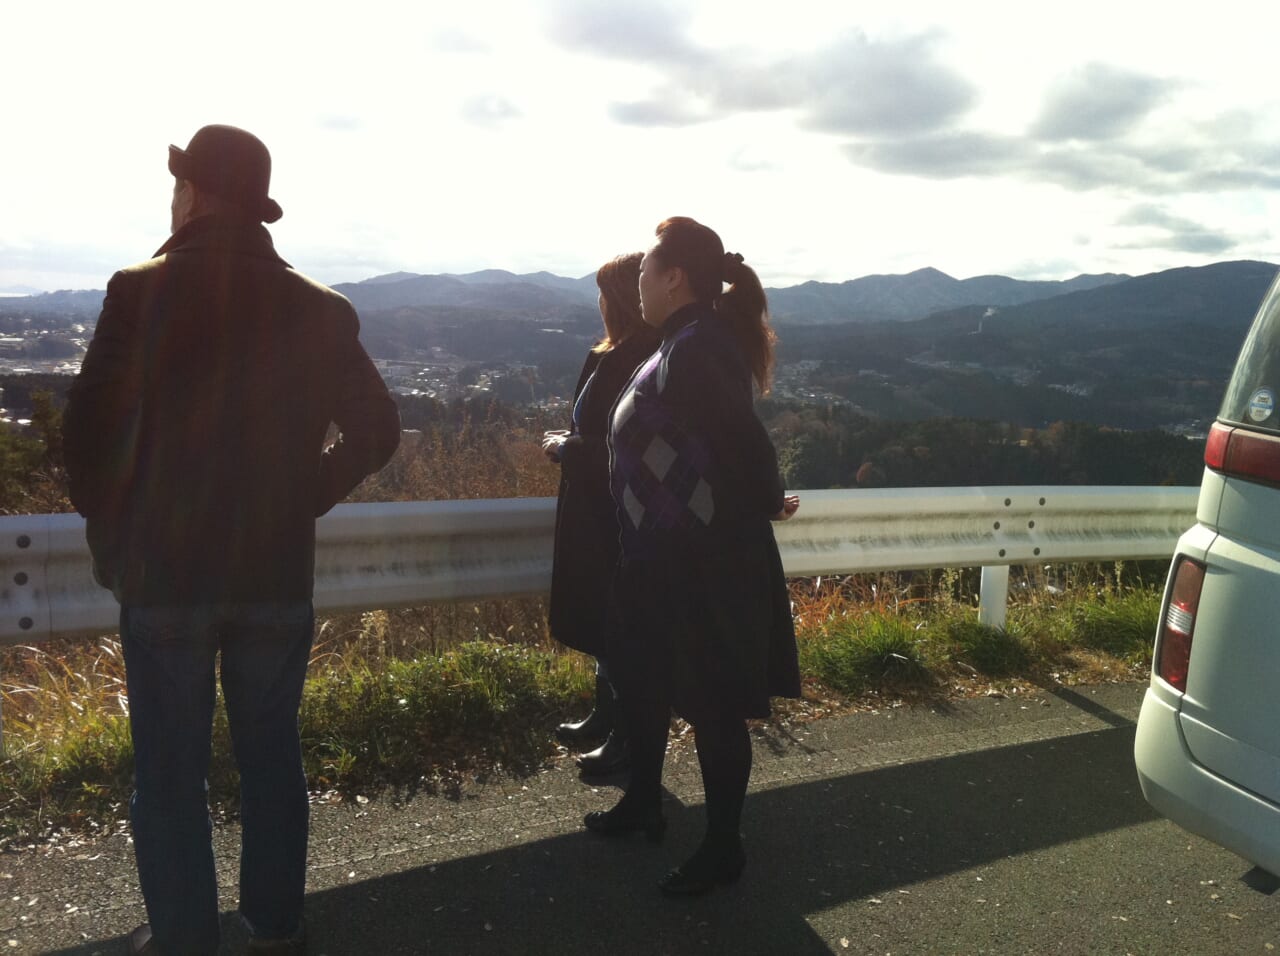 2011年12月2日。初めての気仙沼のご案内は、いつもオノデラコーポレーションの紀子さんに。この日は矢野顕子さんが気仙沼に。